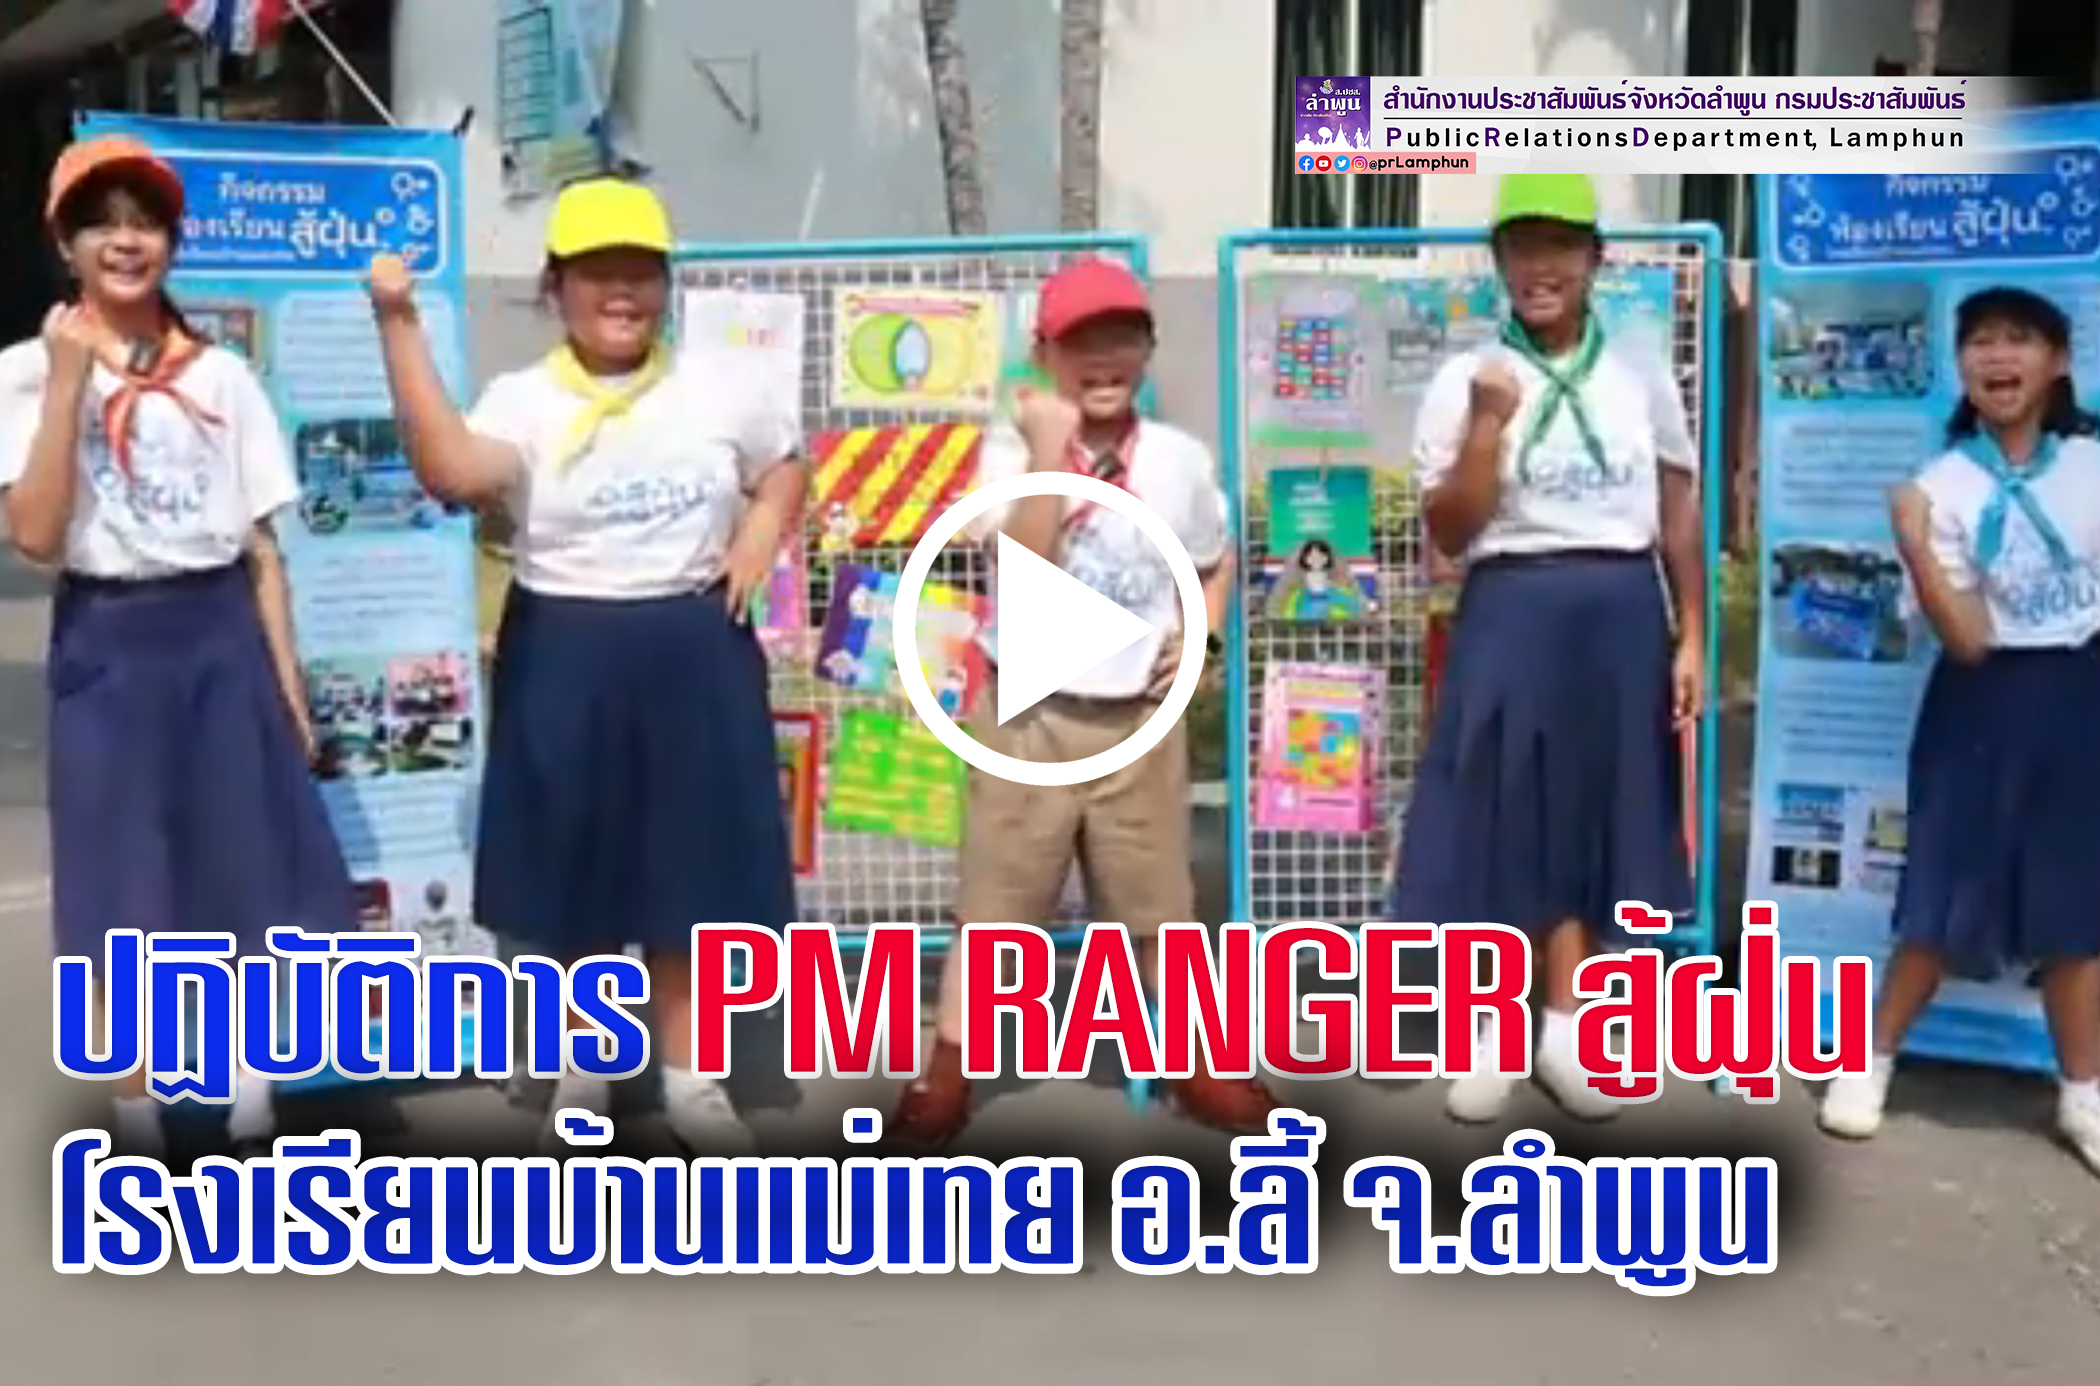 ปฏิบัติการ PM RANGER สู้ฝุ่น โรงเรียนบ้านแม่เทย อำเภอลี้ จังหวัดลำพูน